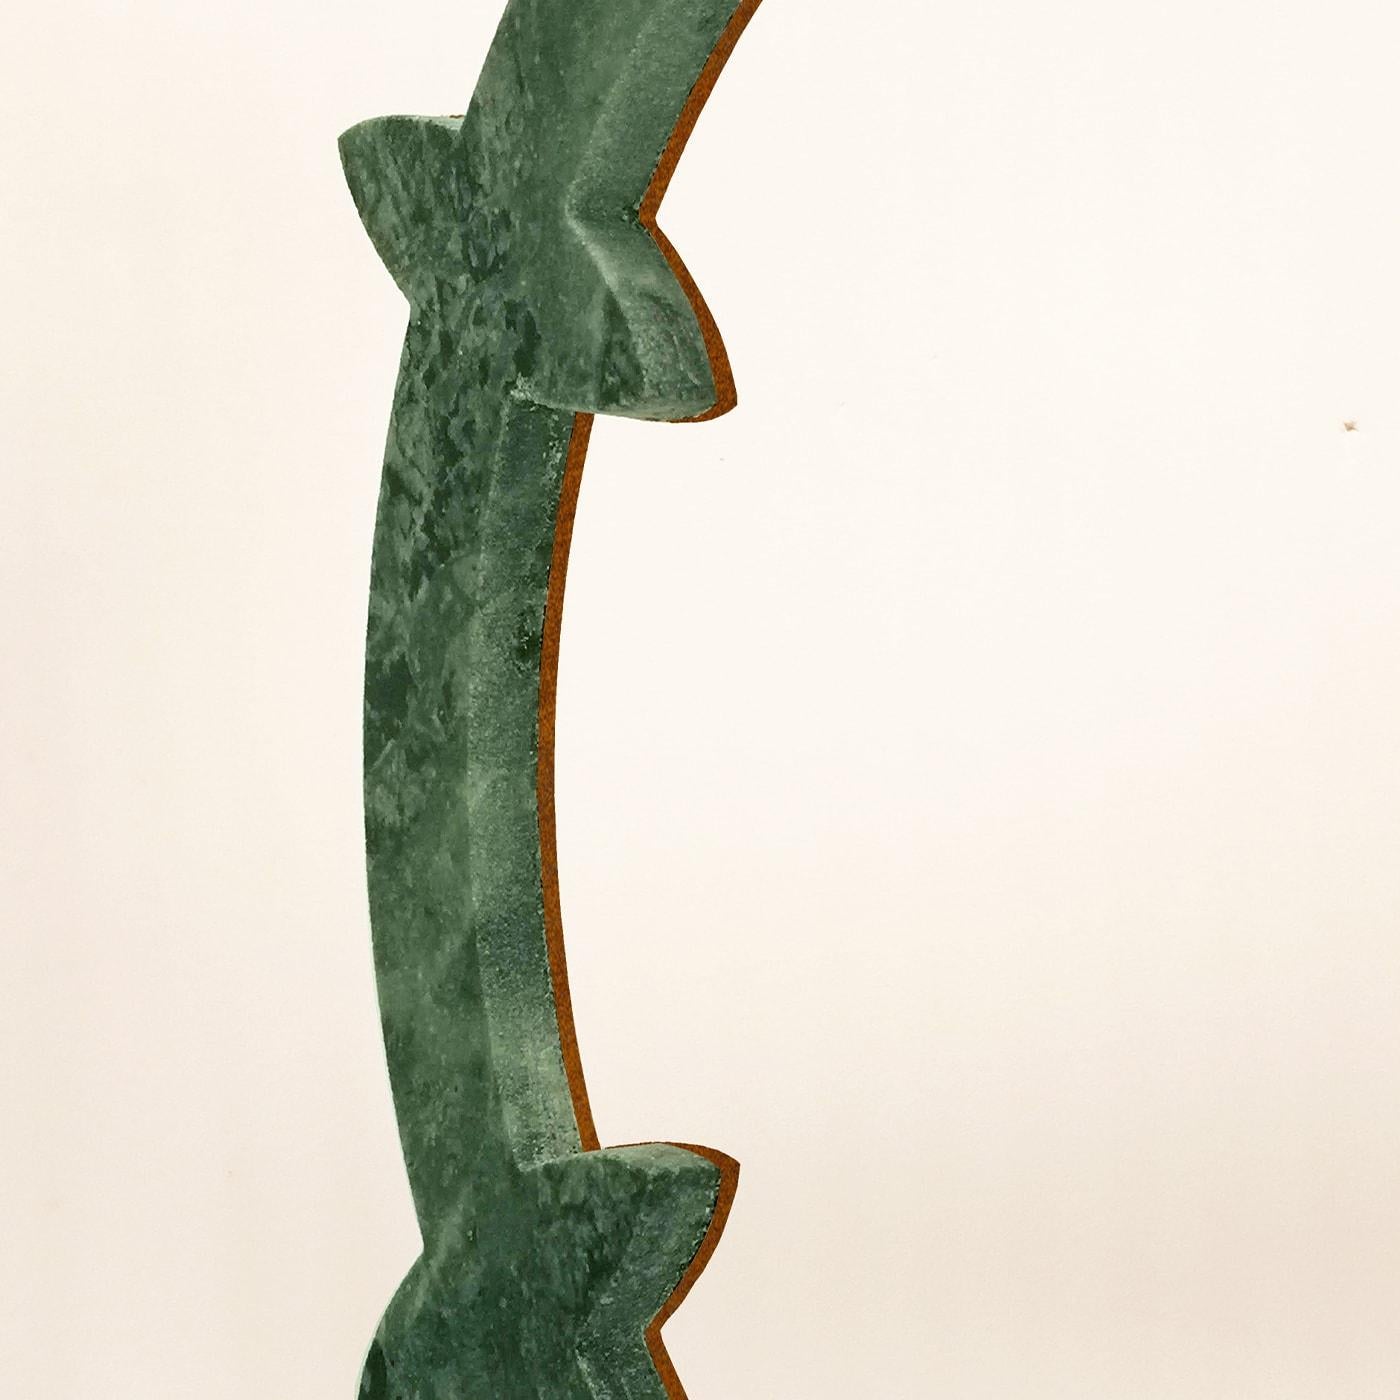 Inspiré de l'armilla Piceno, il apporte avec lui ses valeurs, récupère sa mémoire, l'interprète et la restitue dans un meuble, œuvre d'artisans qualifiés. L'utilisation du fer est une référence claire à la fabrication de cet objet historique. Le